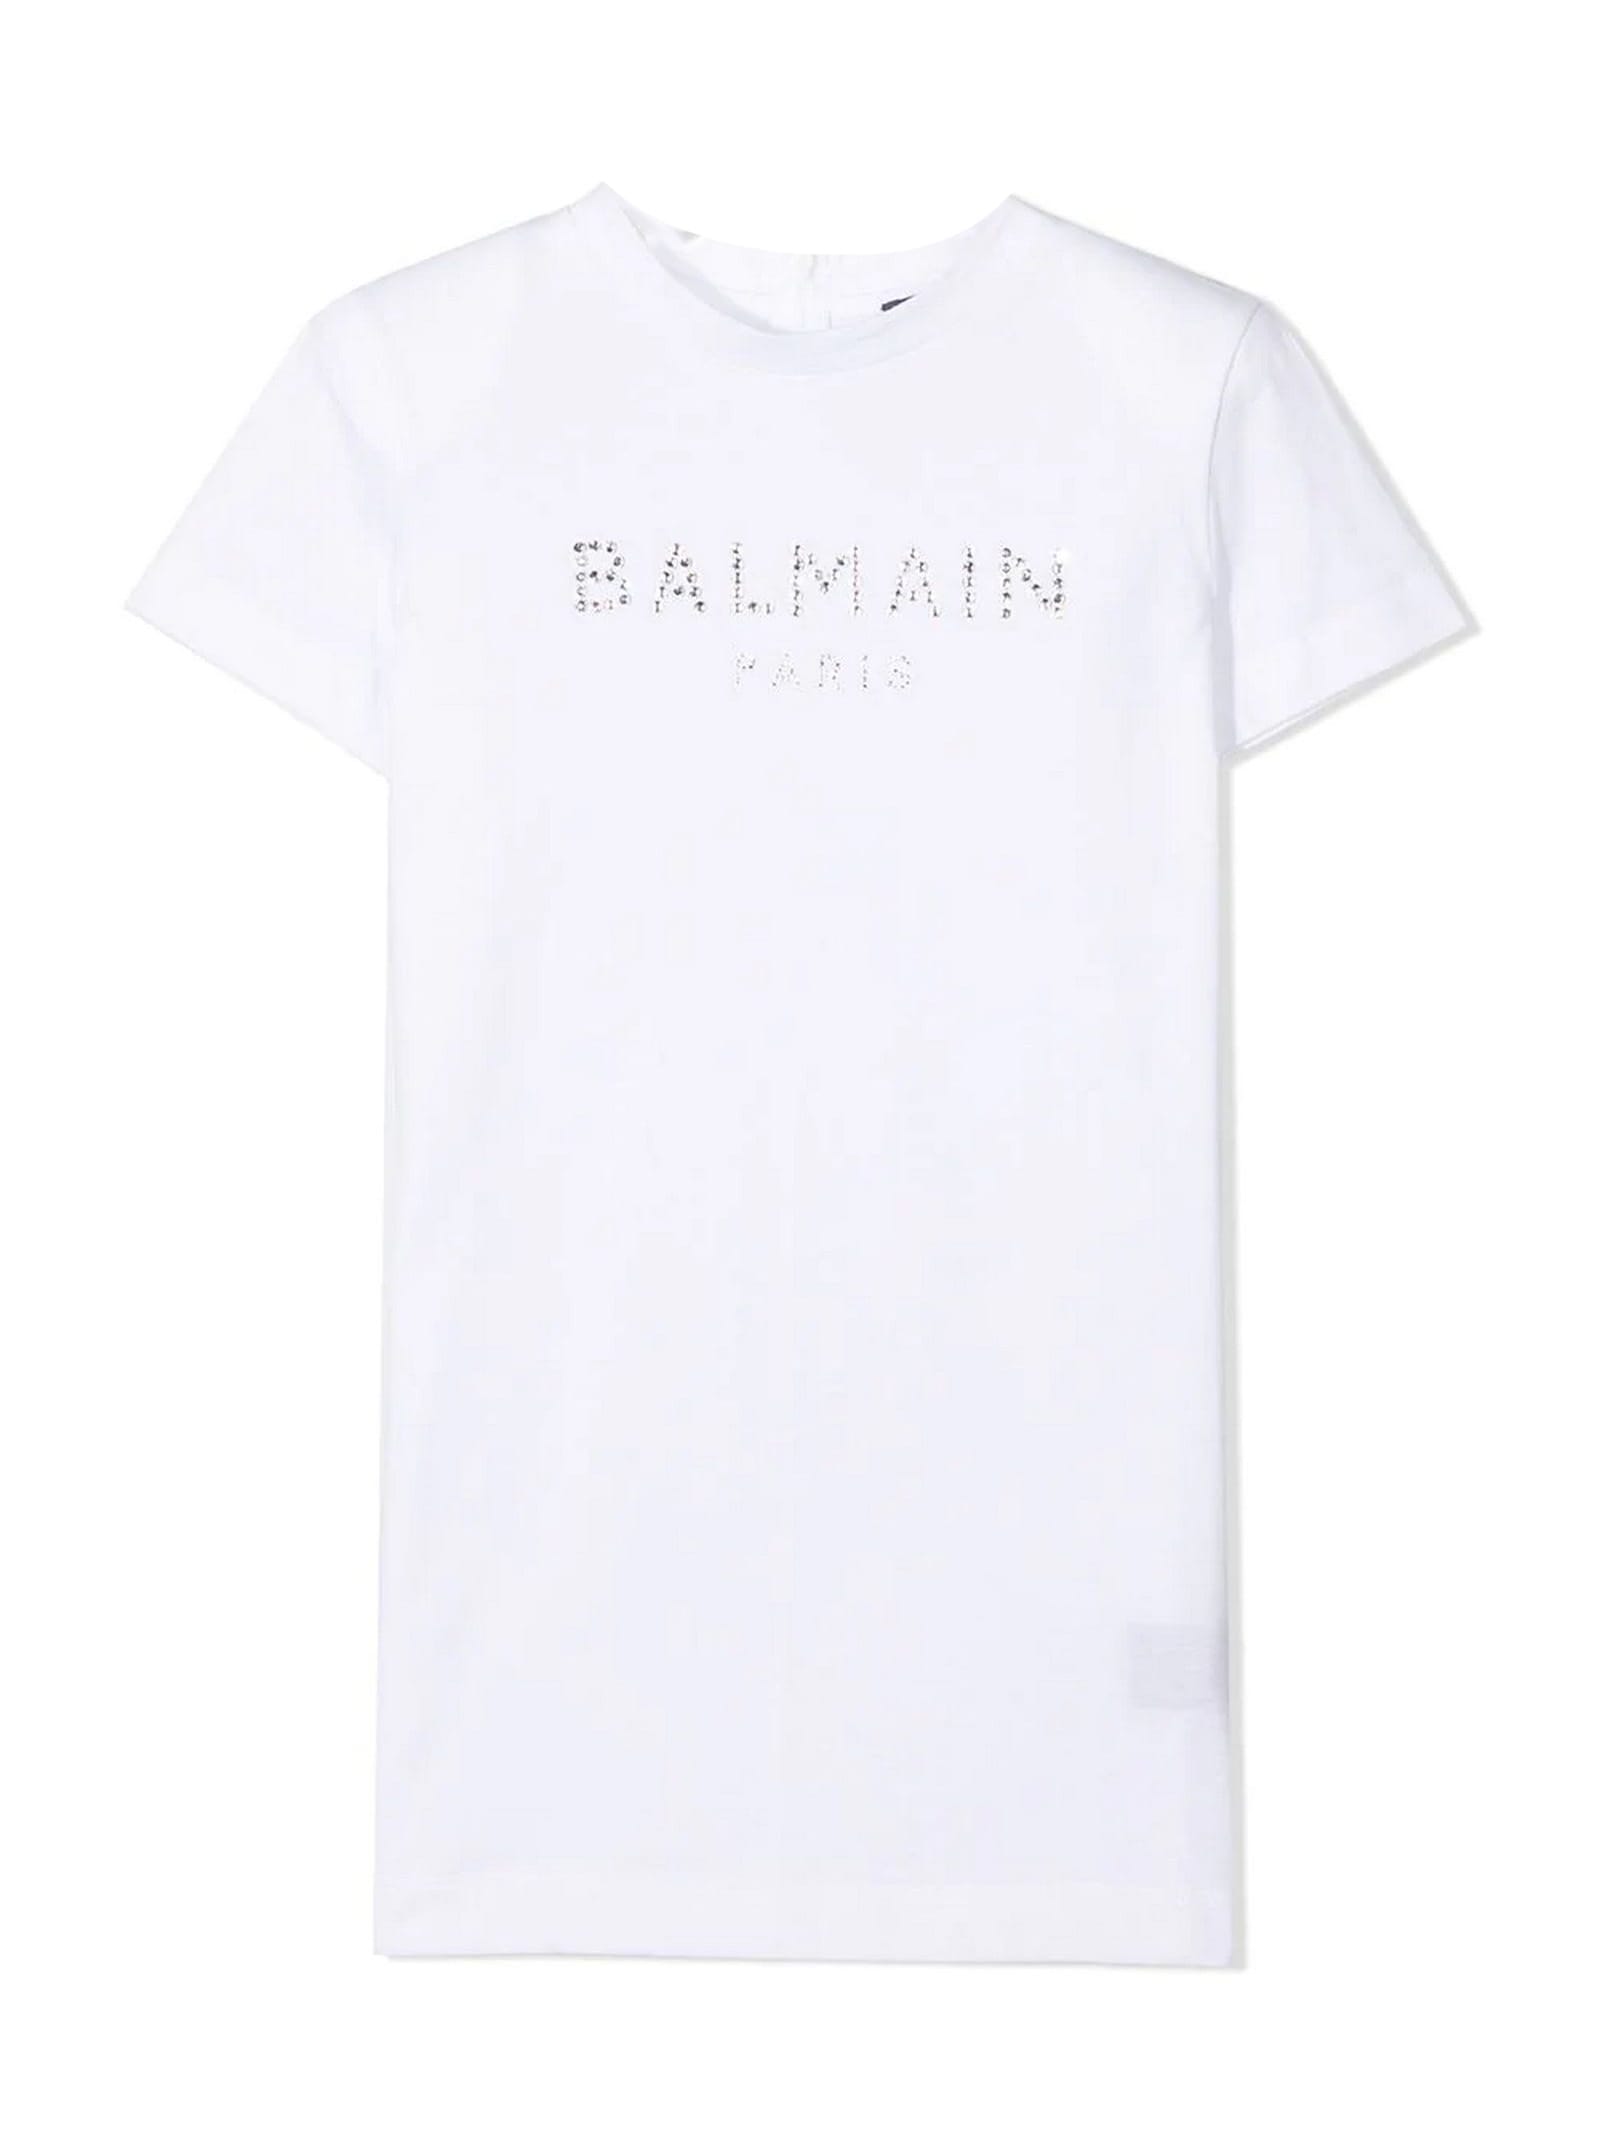 Balmain White Cotton T-shirt Dress